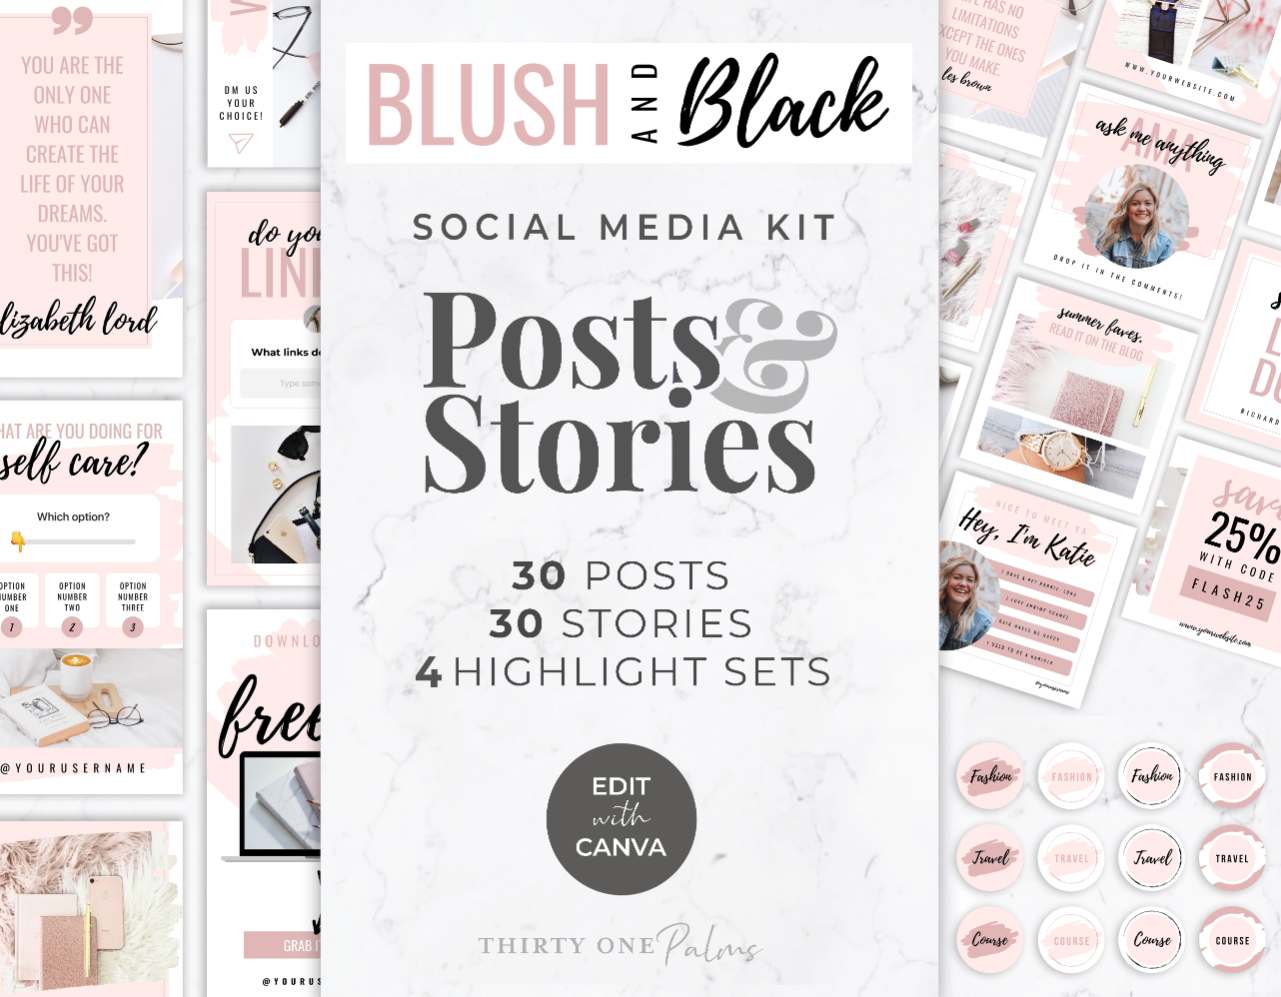 Instagram Template Bundle for Canva – Blush & Black